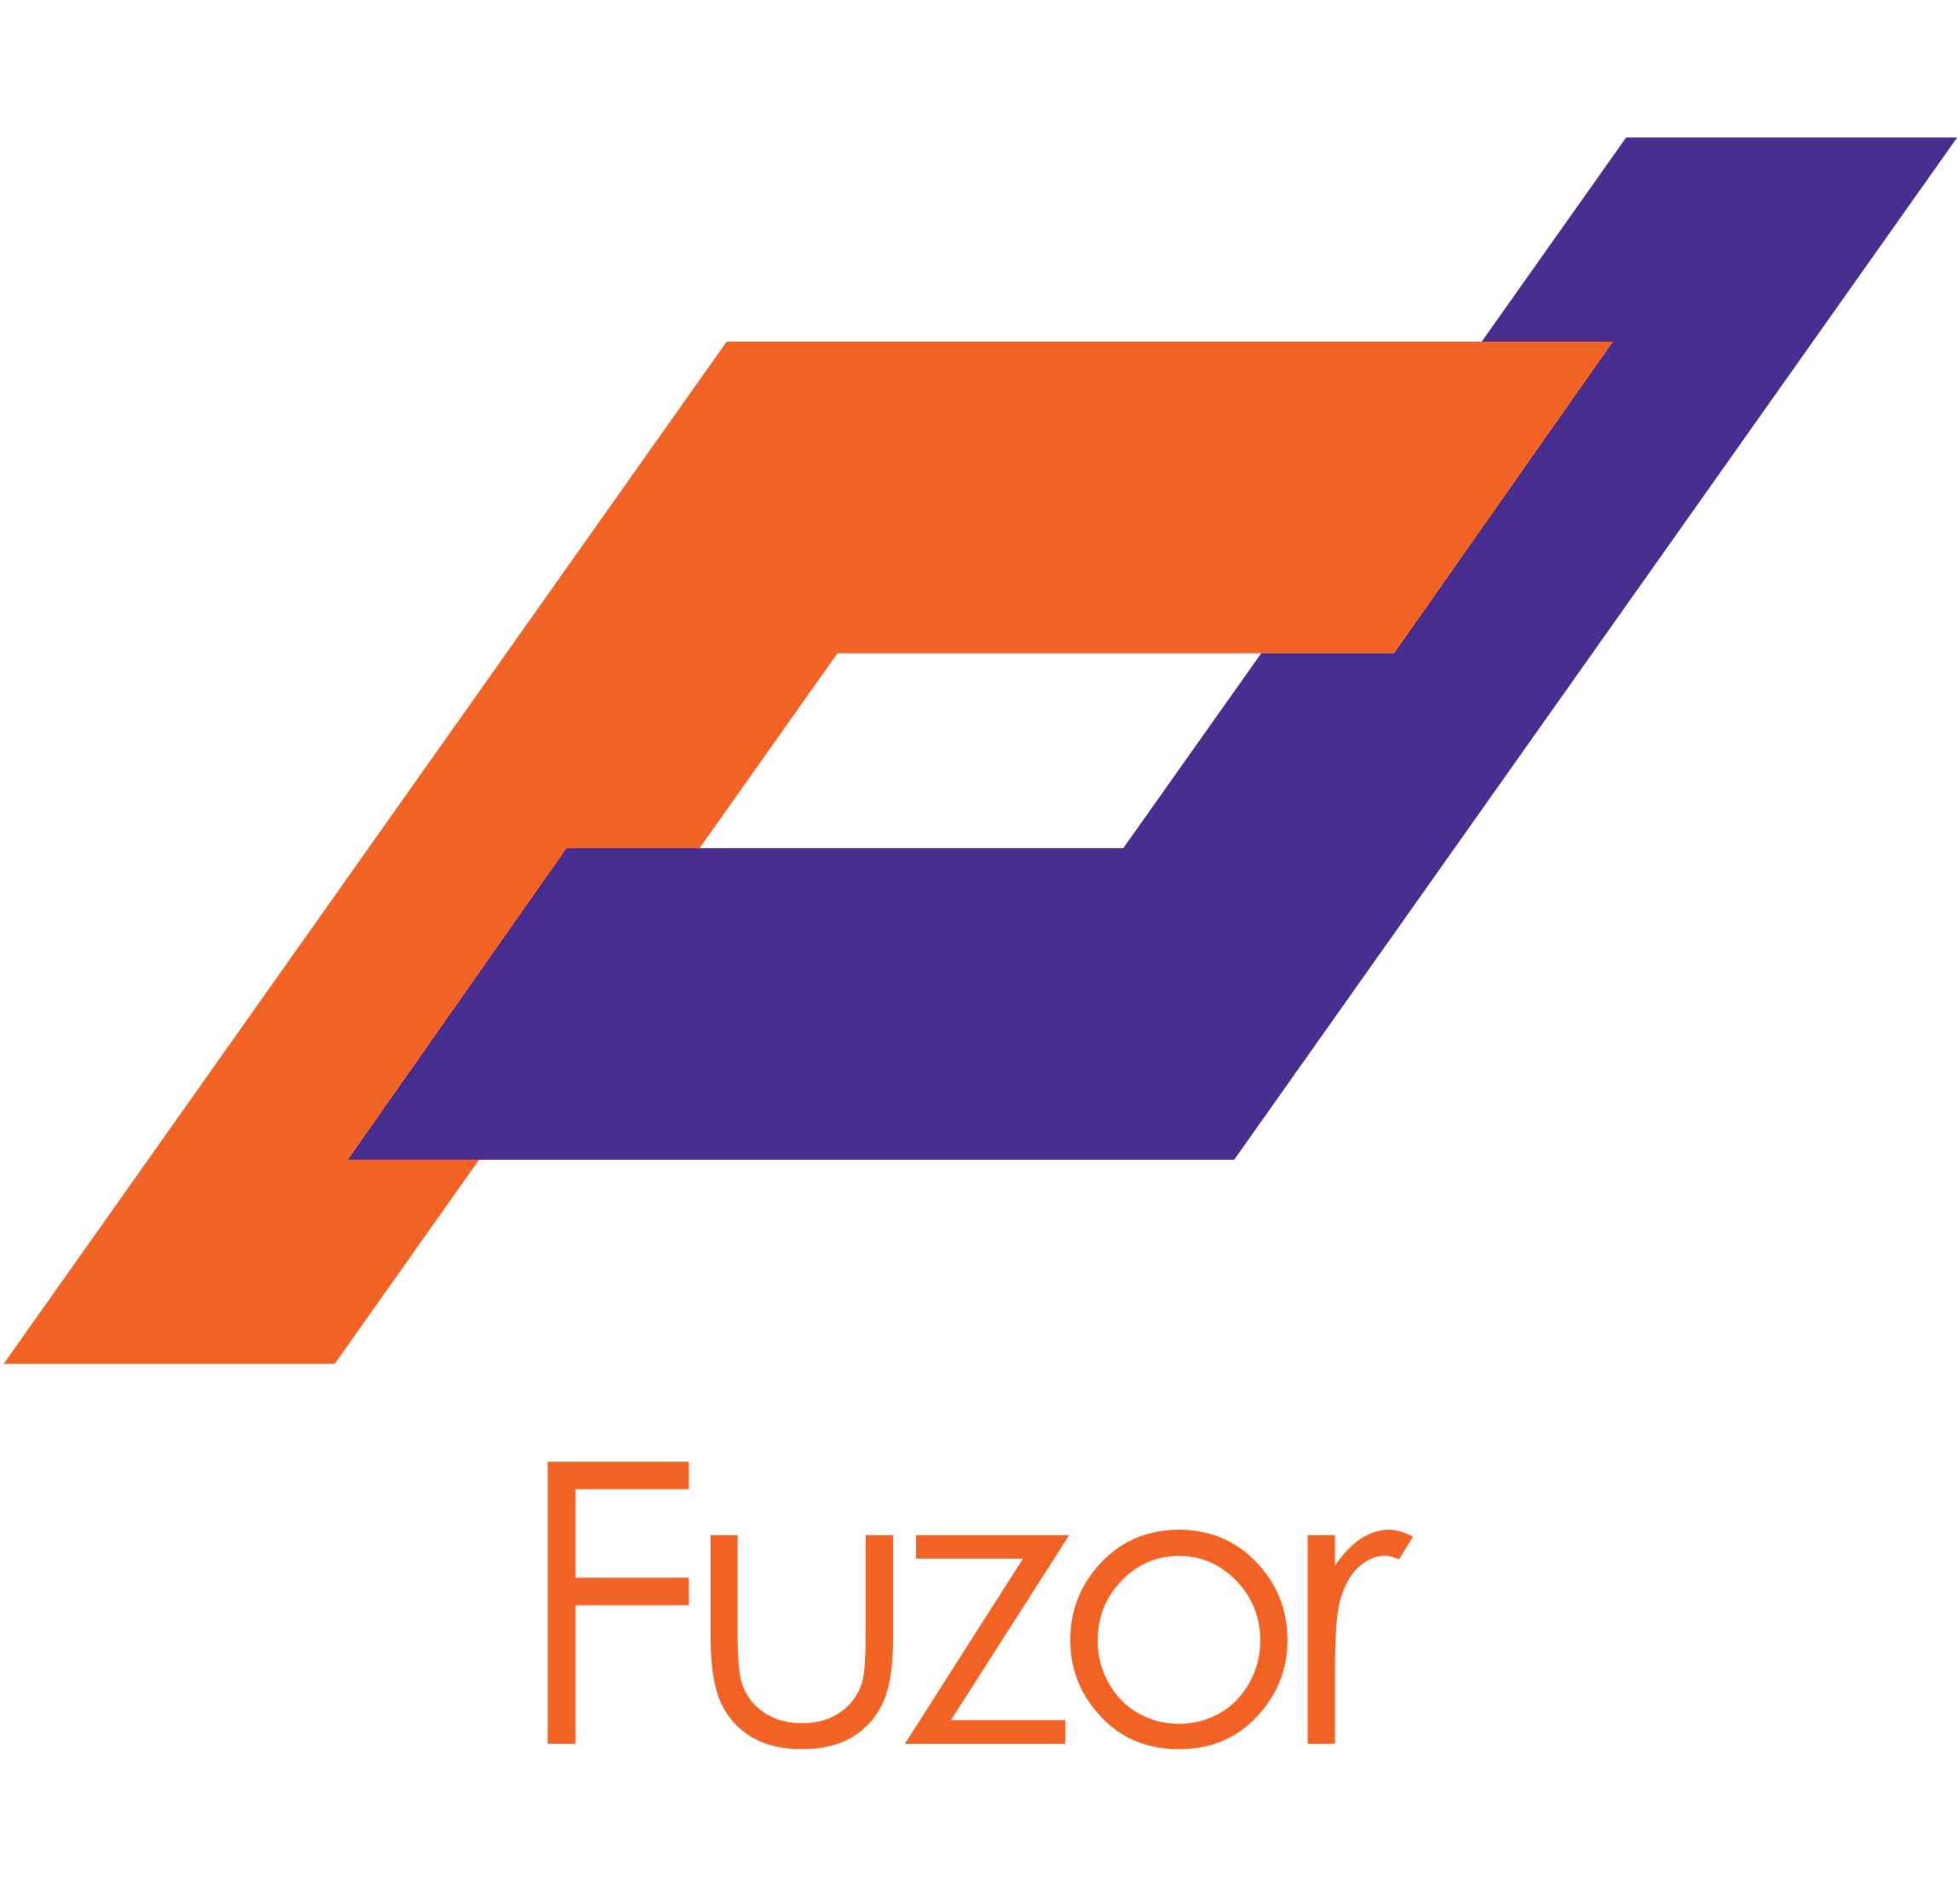 Public Photos / Files - Fuzor Logo